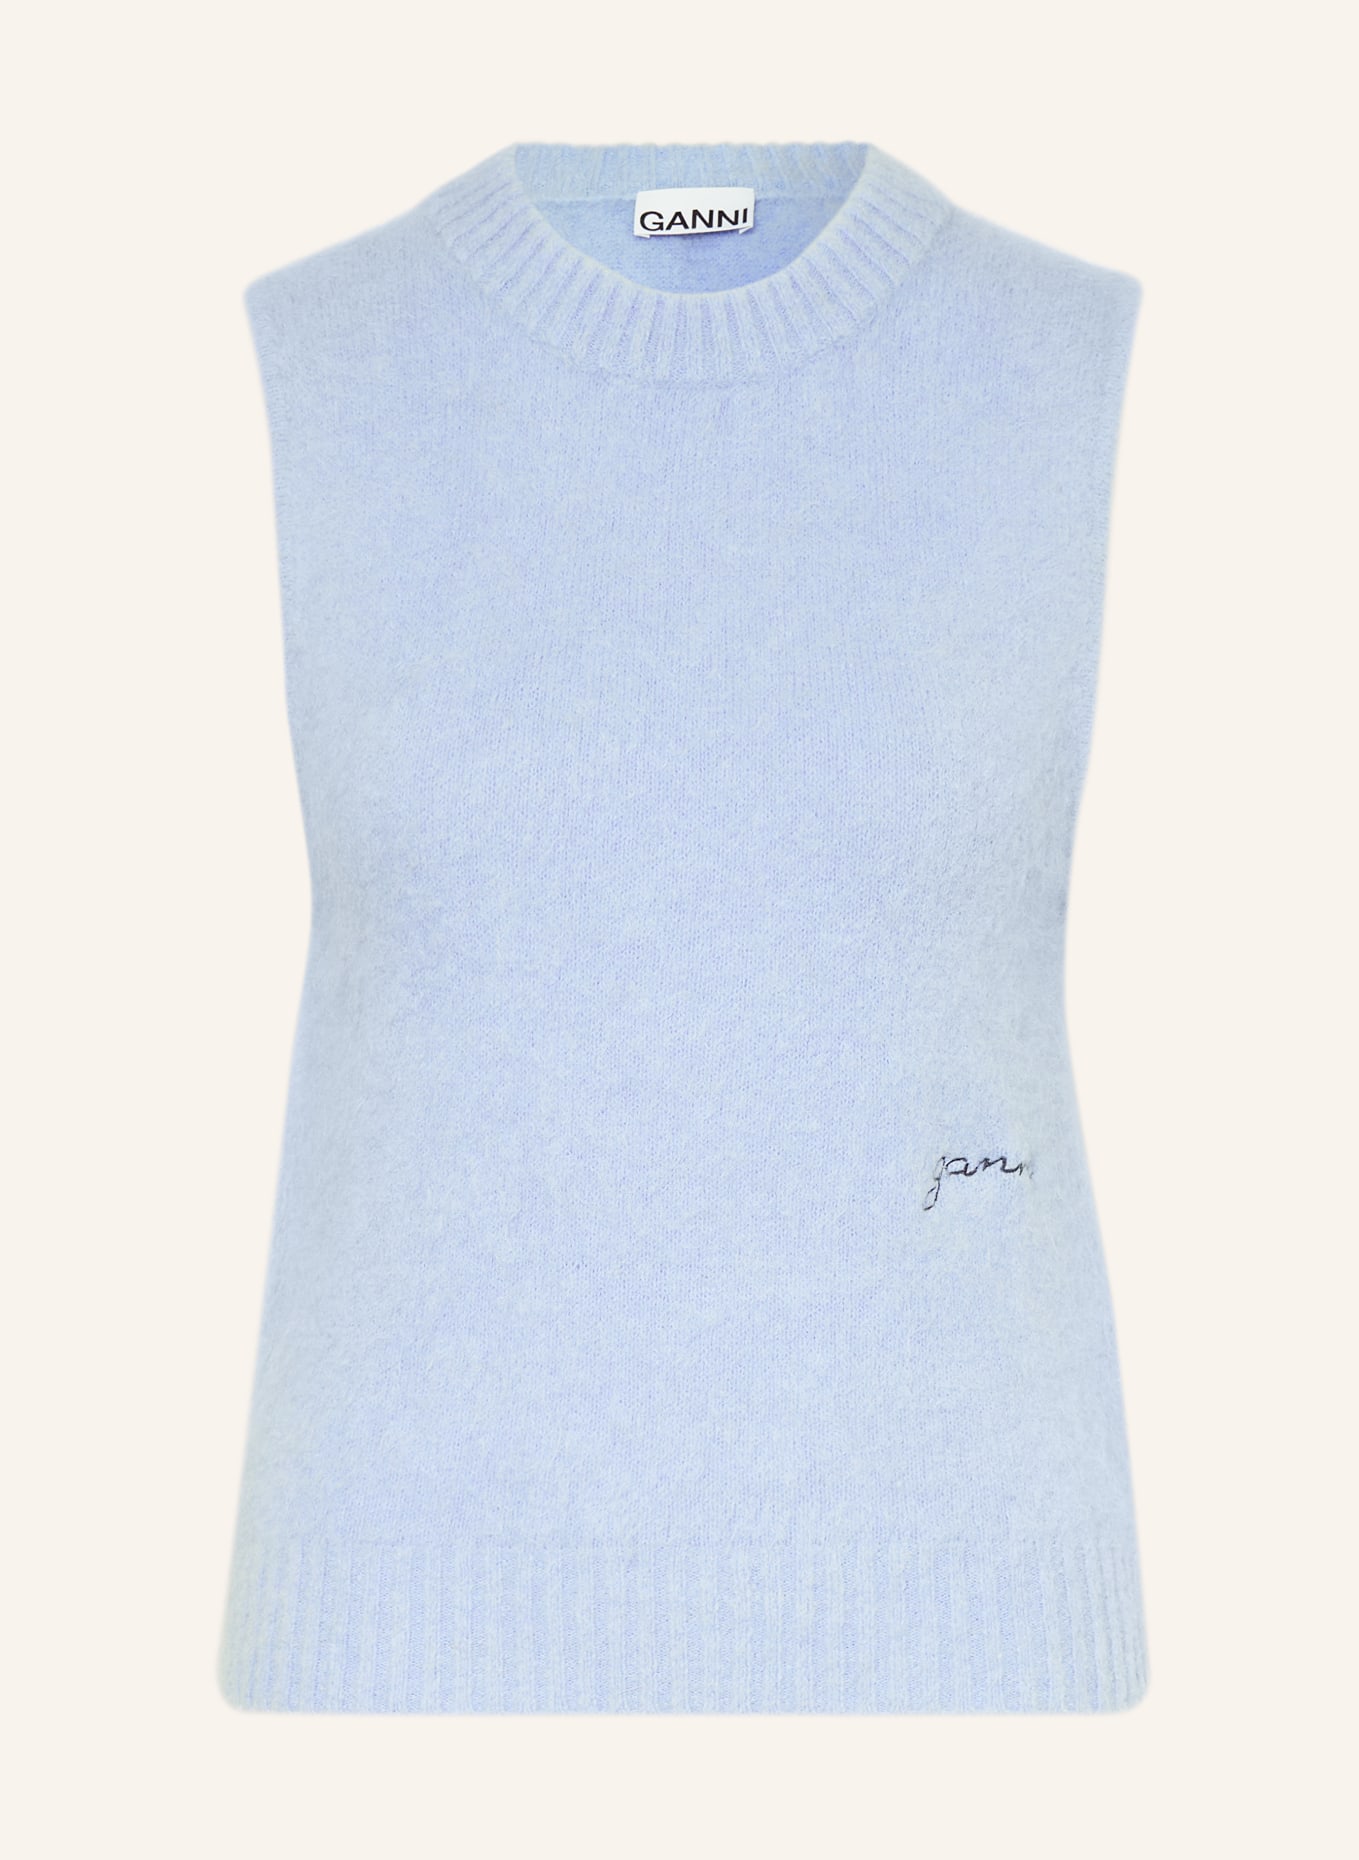 GANNI Sweater vest with alpaca, Color: BLUE (Image 1)